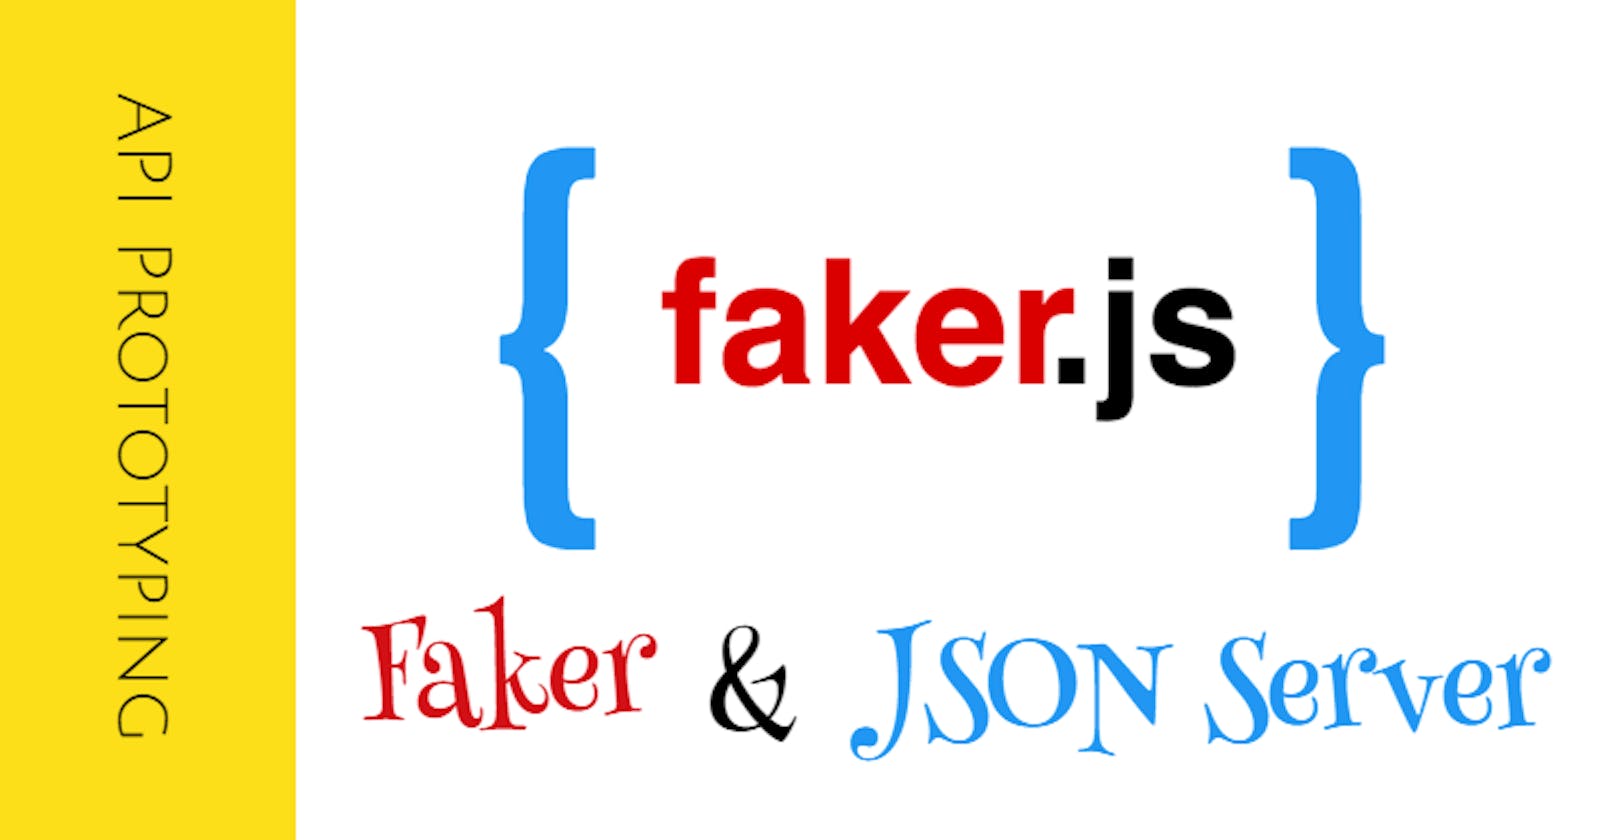 Using faker.js on Next.js API Route